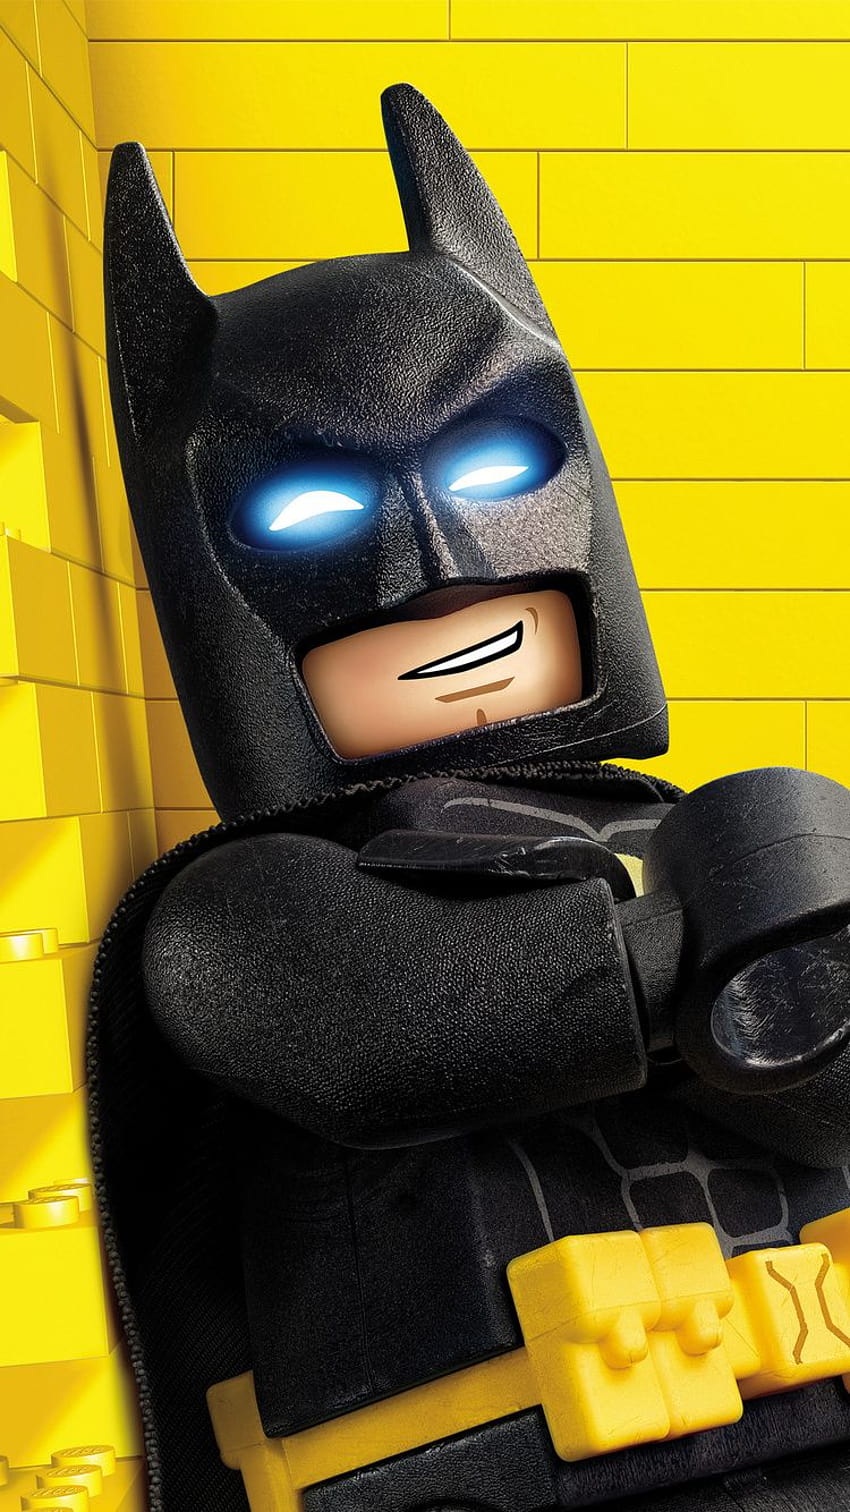 30 Lego Batman Movie Wallpapers  WallpaperSafari